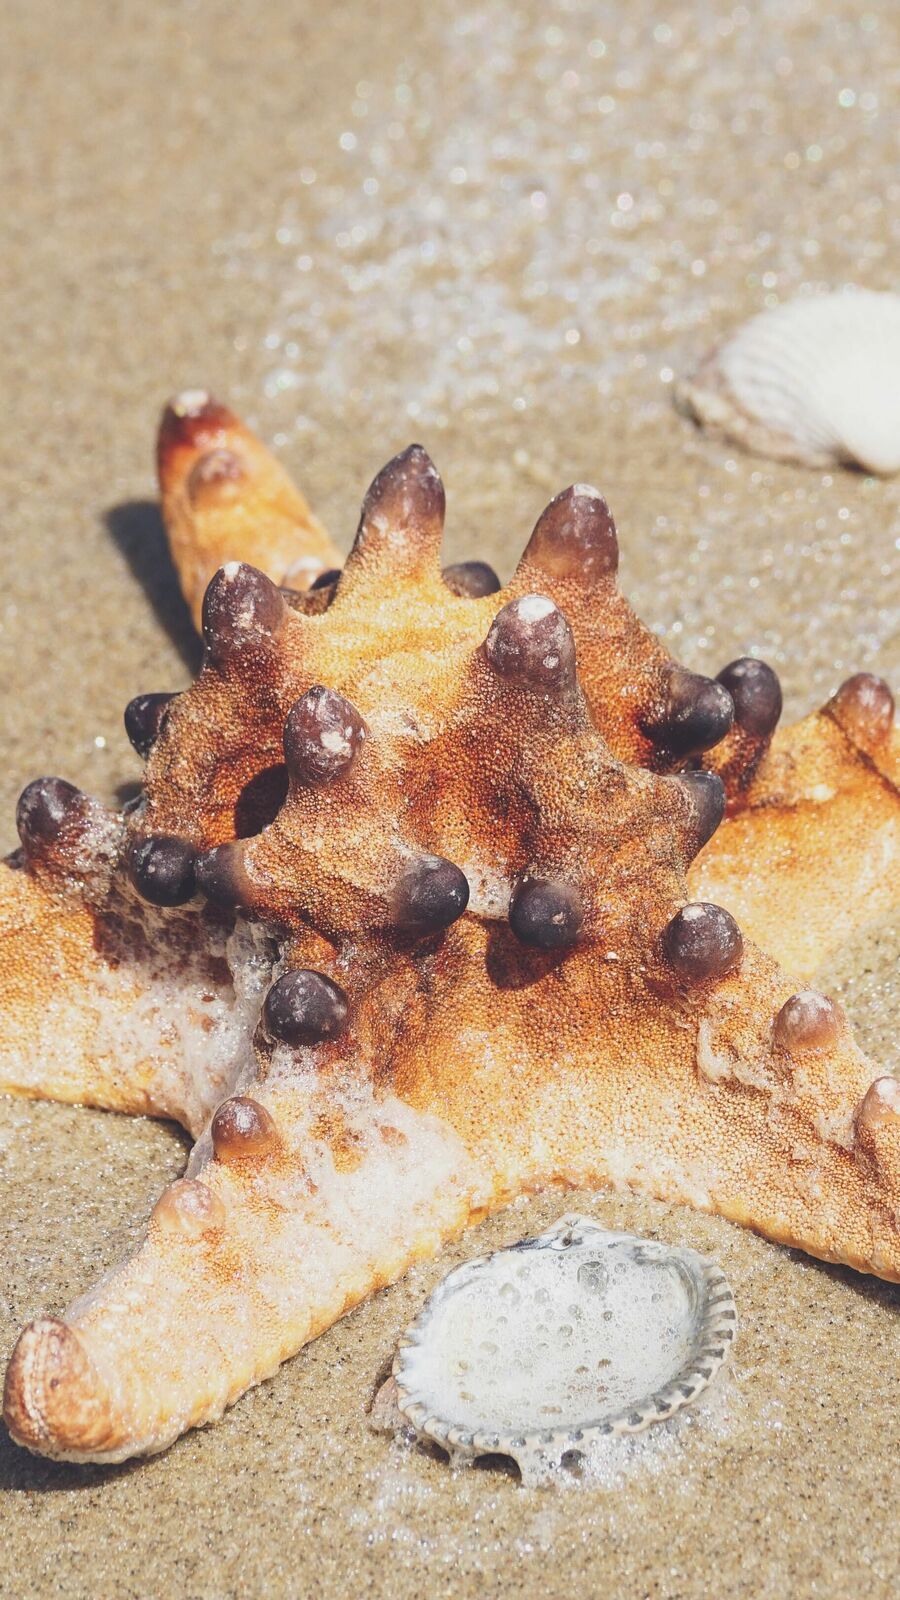 Starfish Unknown Facts: মগজহীন এই মাছ, বেঁচে থাকে কেমন করে?